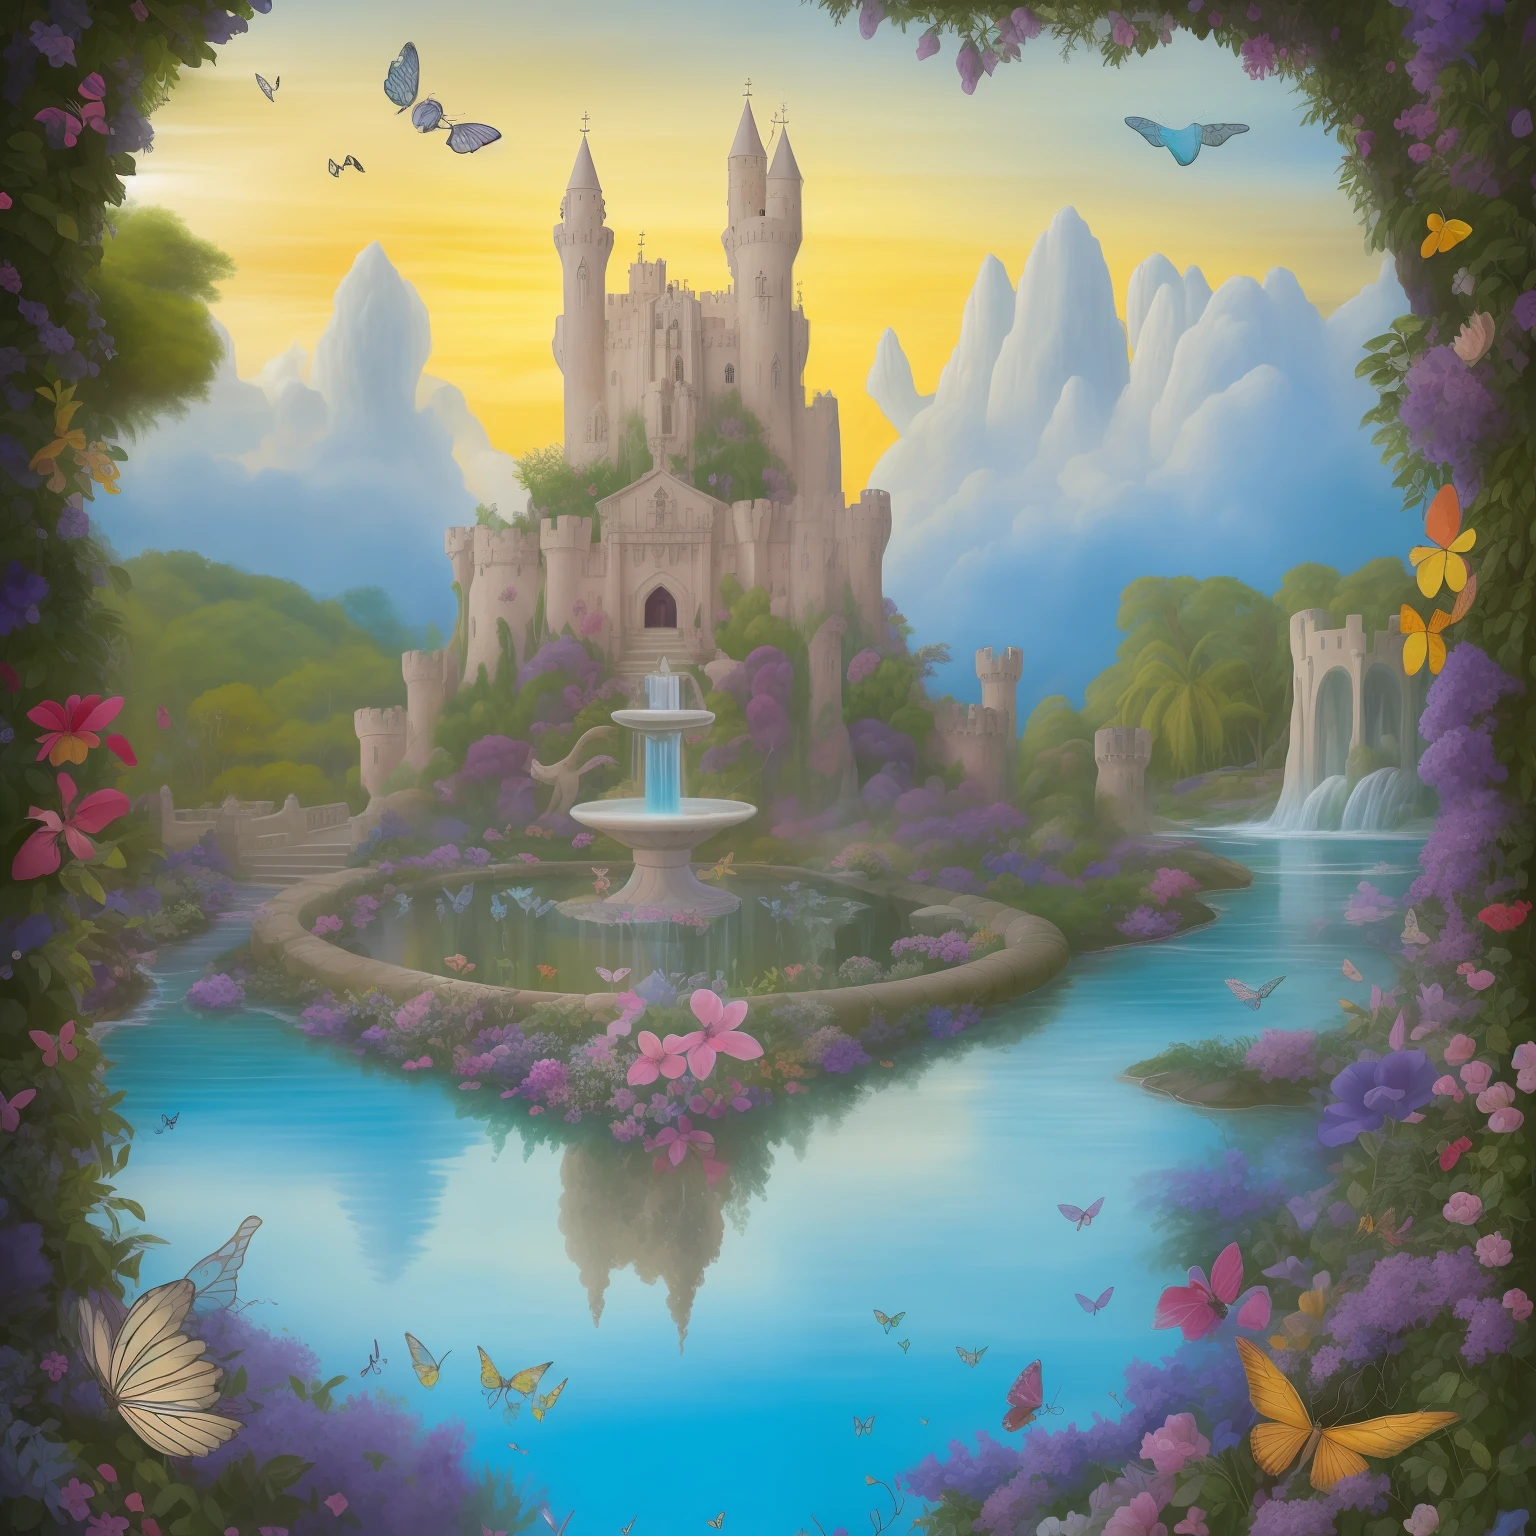 "Imagine una obra de arte que transporte a los espectadores a un reino de asombro.. Una escena mágica y encantadora se desarrolla ante tus ojos., con un paisaje exuberante y lleno de vida. No horizonte, se levanta un majestuoso castillo de cuento de hadas, con torres en espiral, elaboradas almenas y vidrieras brillantes que reflejan los colores del arco iris.

alrededor del castillo, un exuberante, flores exóticas del jardín, lleno de flores exuberantes y fauna encantadora. Mariposas multicolores bailan con gracia en el aire., mientras los pájaros cantan melodías celestiales entre las ramas de árboles centenarios.

Un río serpenteante atraviesa el paisaje., sus aguas cristalinas reflejando el sol. Puentes de piedra arqueados conectan las orillas, añadiendo un toque pintoresco a la escena.

Frente al castillo, Una fuente tallada con intrincados detalles brota agua cristalina en cascada, rodeado de elegantes estatuas de seres mitológicos y criaturas fantásticas..

El cielo está pintado en tonos dorados., rosa e azul, mientras las nubes blancas y esponjosas flotan suavemente, enmarcando la escena como una obra maestra celestial.

Esta obra de arte es una invitación a un mundo de maravillas., donde la imaginación se hace realidad y los sueños se hacen realidad. Cada detalle está cuidadosamente elaborado para deleitar y cautivar el corazón y la mente del espectador., transportándote a un universo de belleza y encanto."